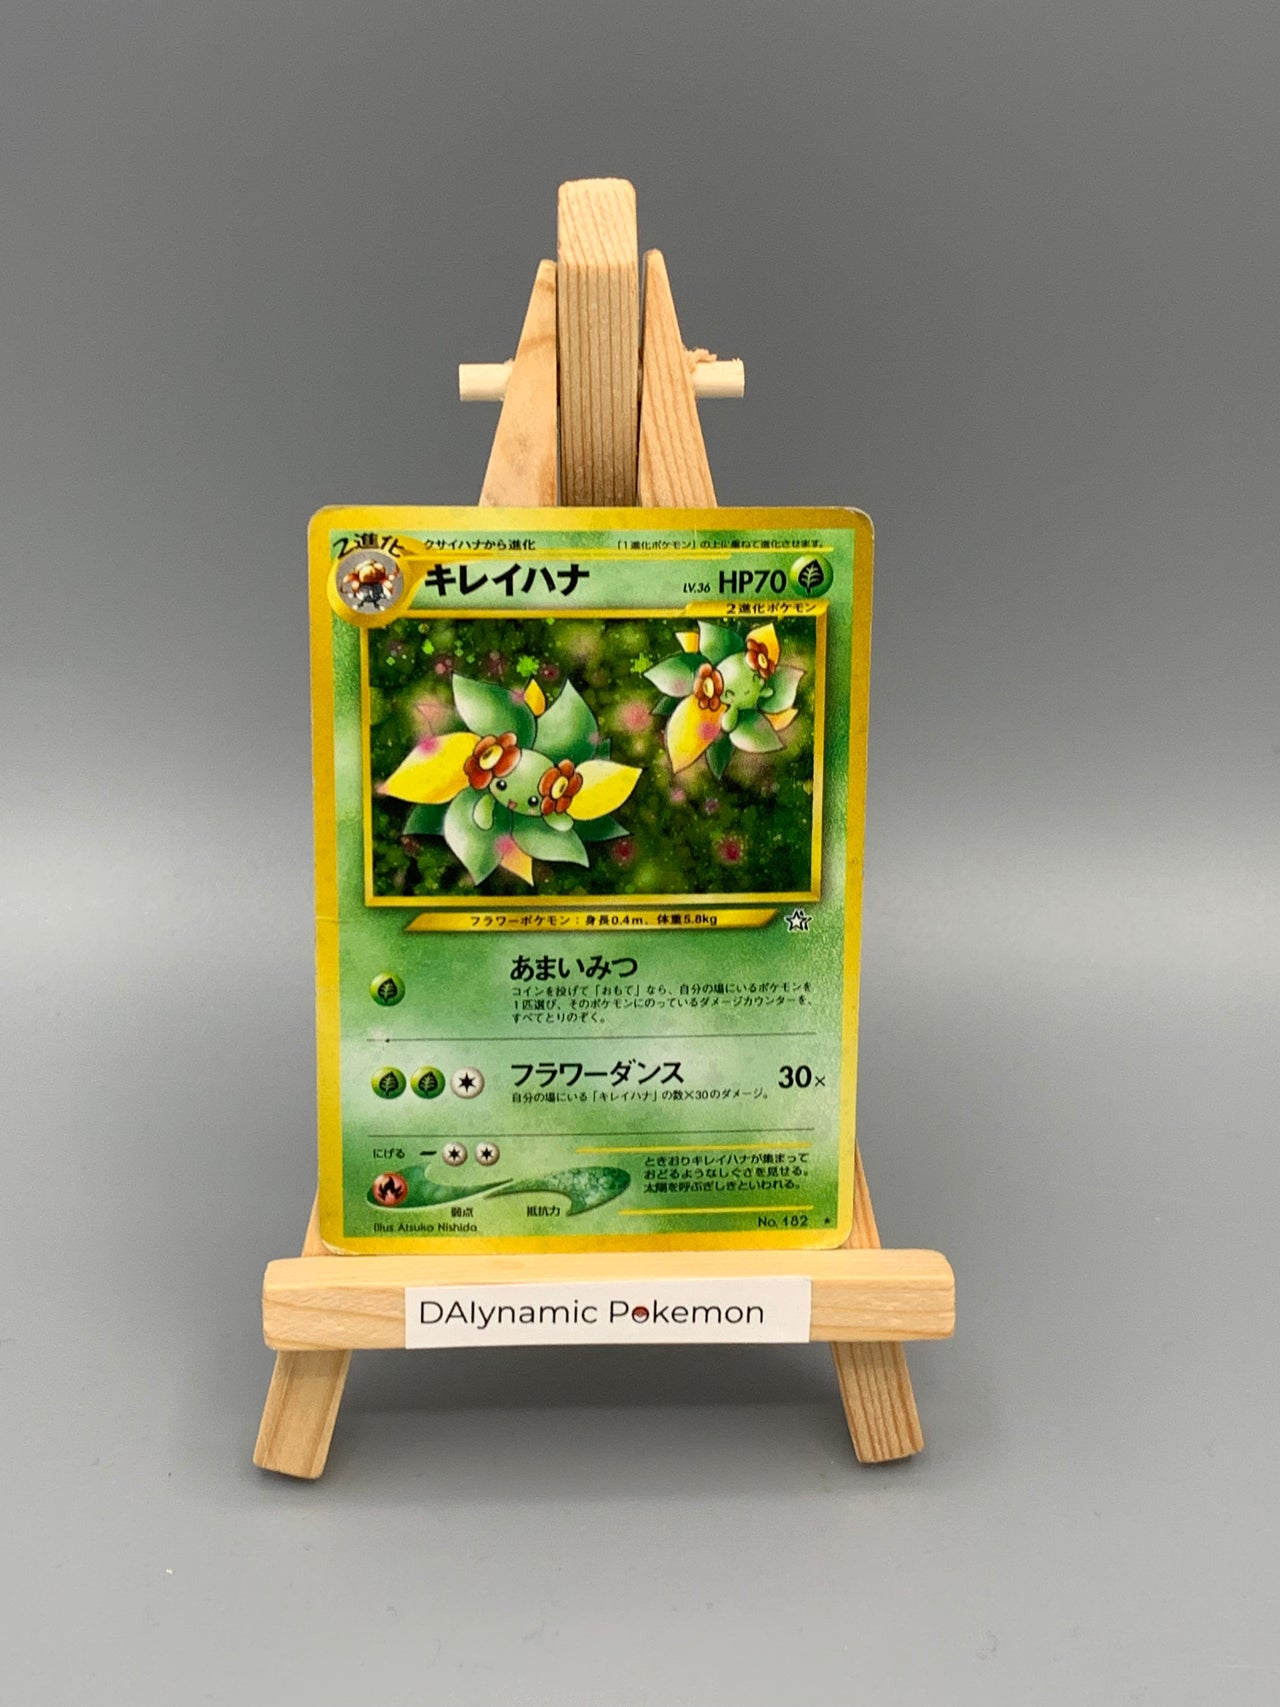 Pokémon Bellossom Holo Pokemon Neo Genesis Japan #182 - Klasse D